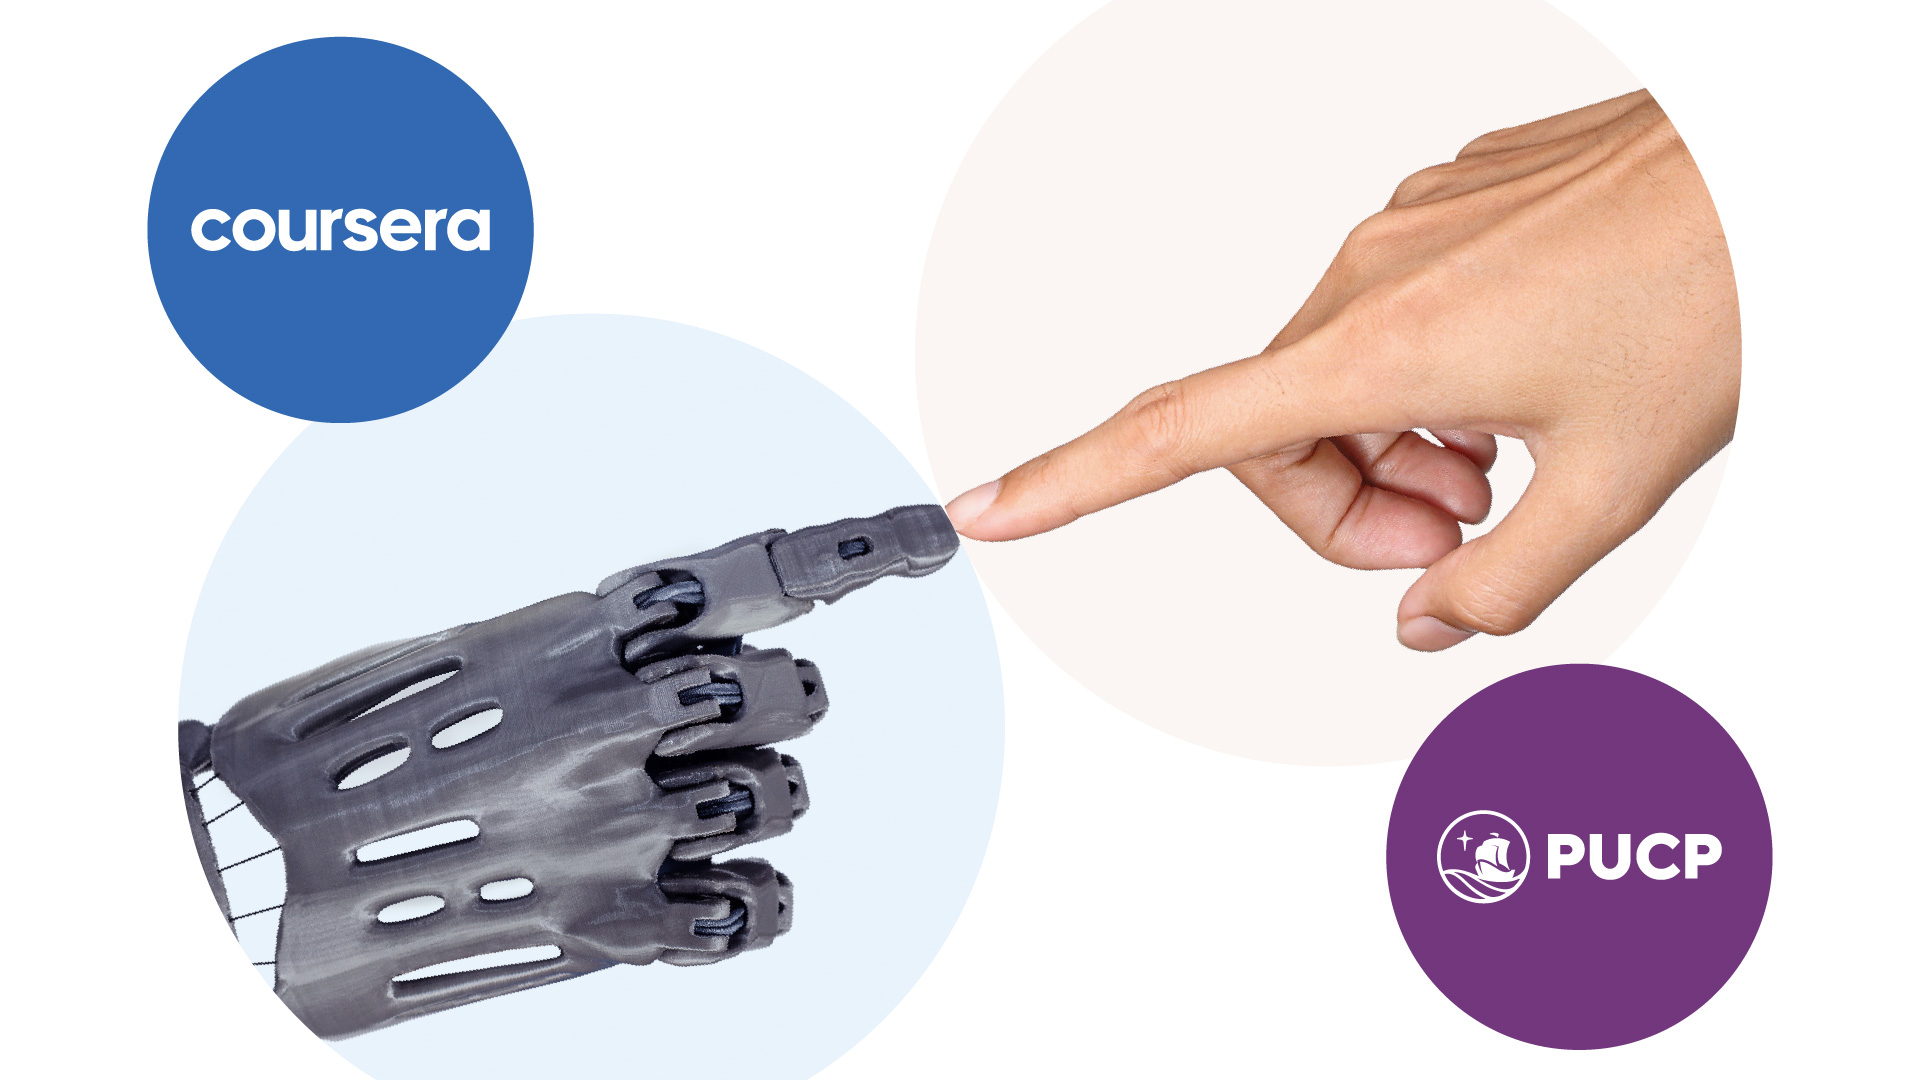 Fotocomposición que simboliza la alianza PUCP - Coursera: una mano robótica junta su índice con una mano humana